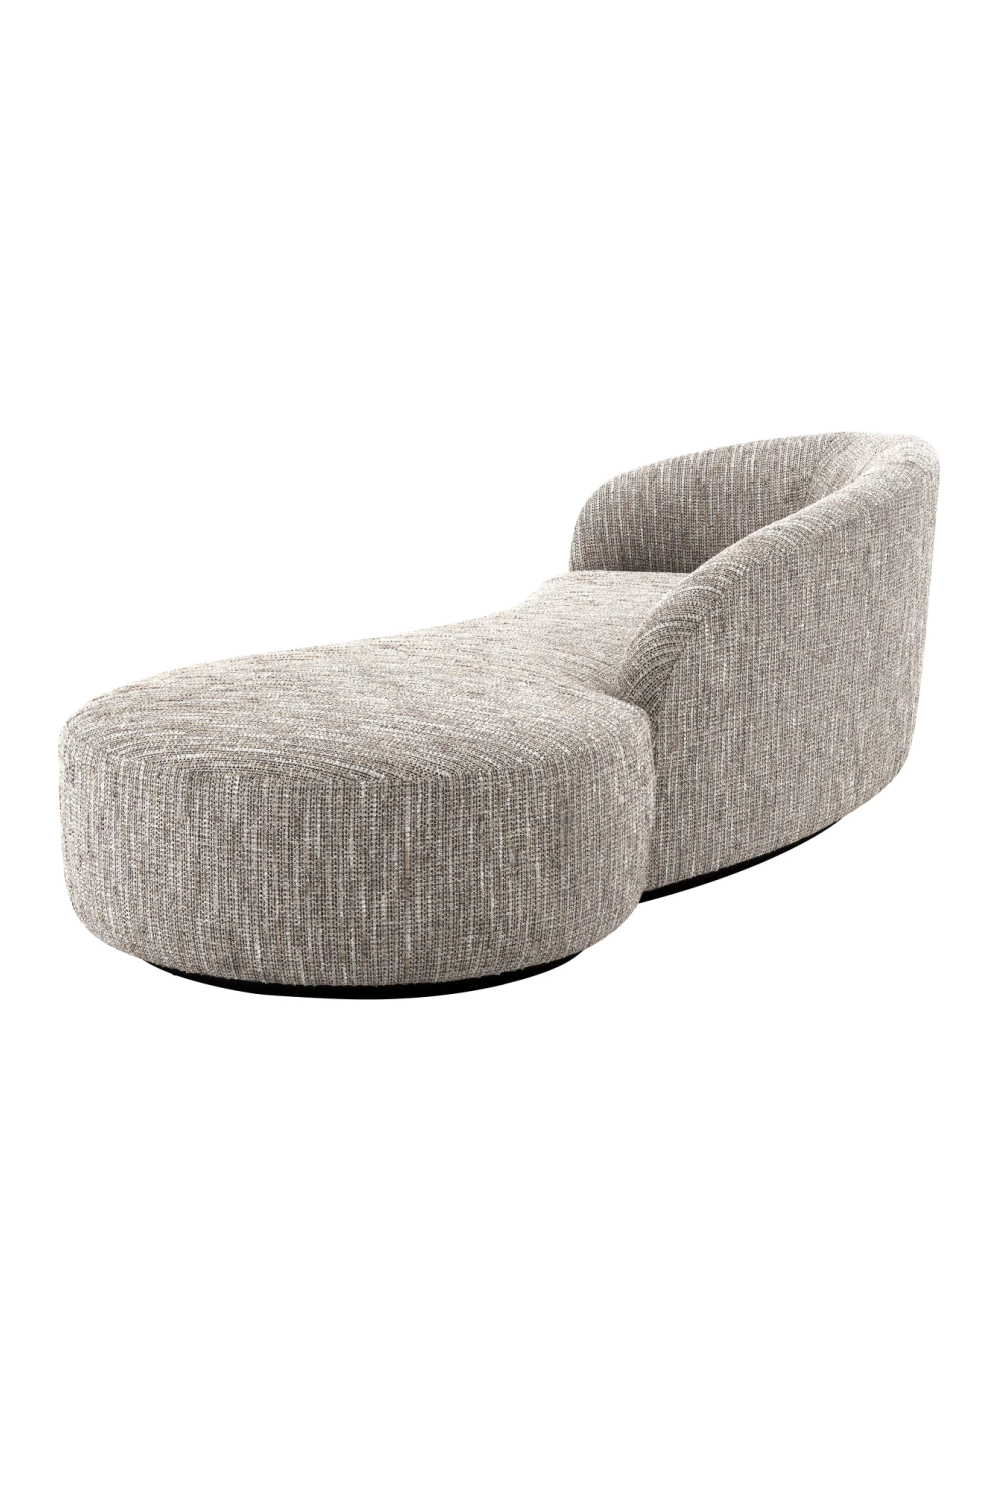 Modern Minimalist Curved Sofa | Eichholtz Bernd | Oroa.com